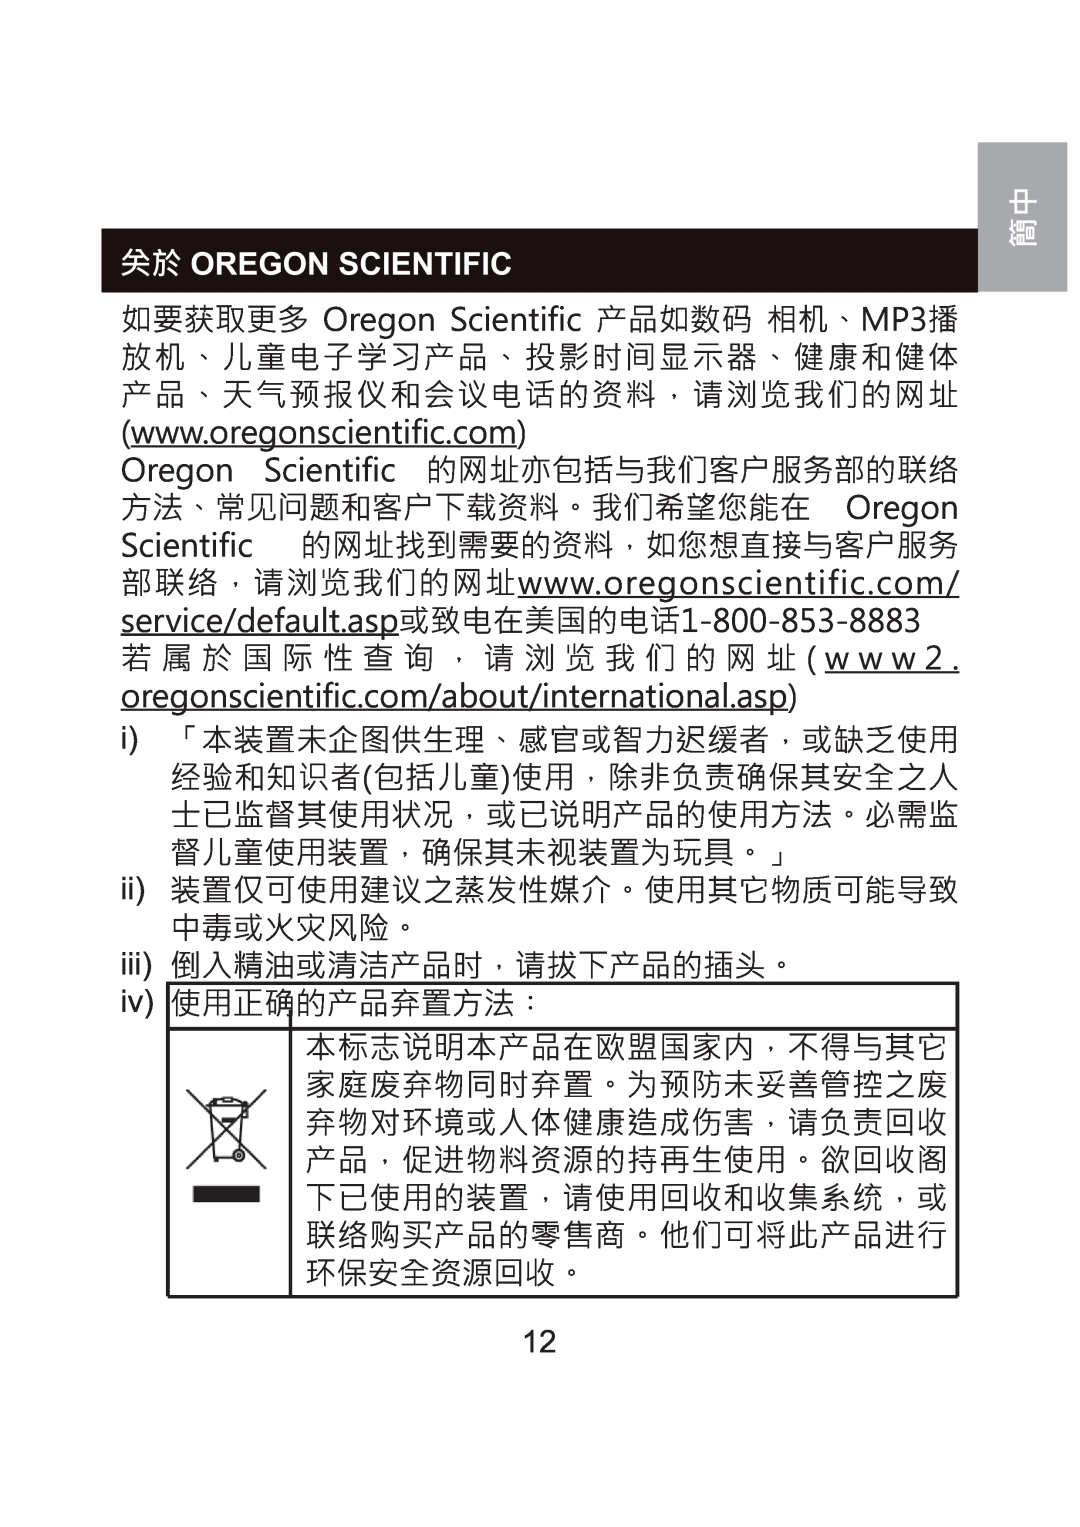 Oregon Scientific WS904 user manual  Oregon Scientific,  2UHJRQ 6FLHQWLILF ZZZRUHJRQVFLHQWLILFFRP, ii iii iv 